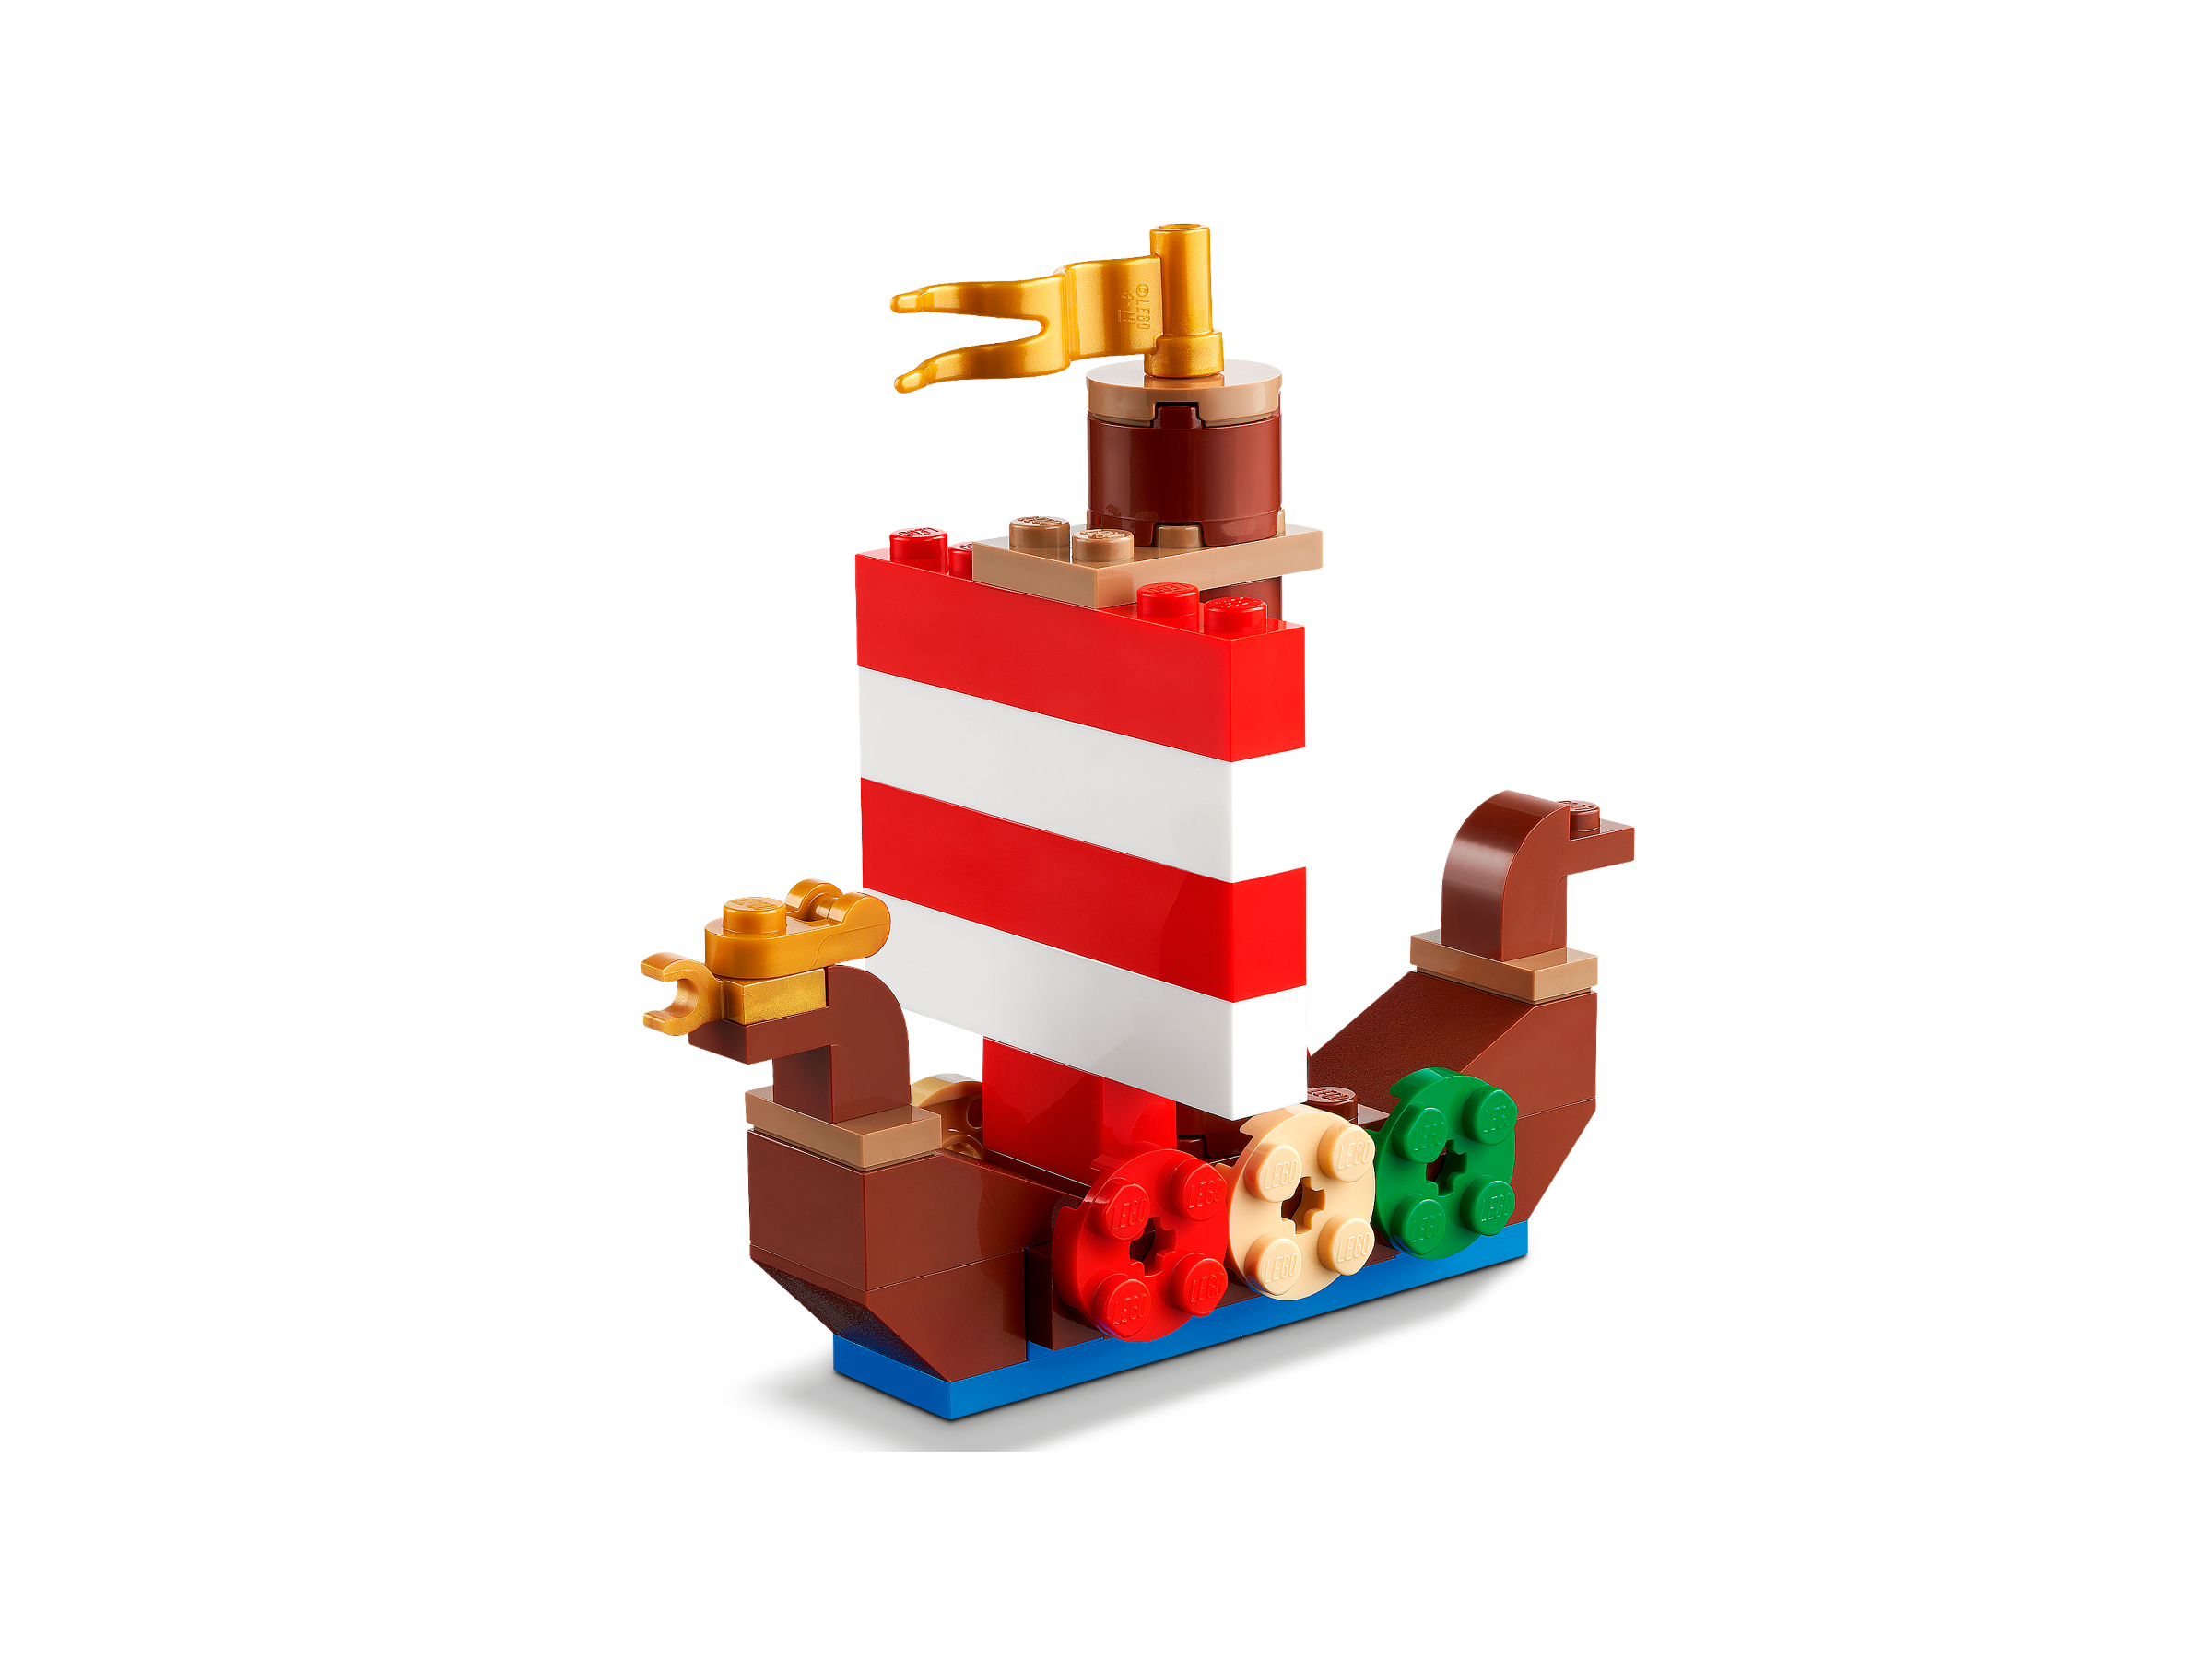 LEGO Classic Creative Ocean Fun 11018 - Juego de juguetes de construcción  para niños, niños y niñas a partir de 4 años (333 piezas)